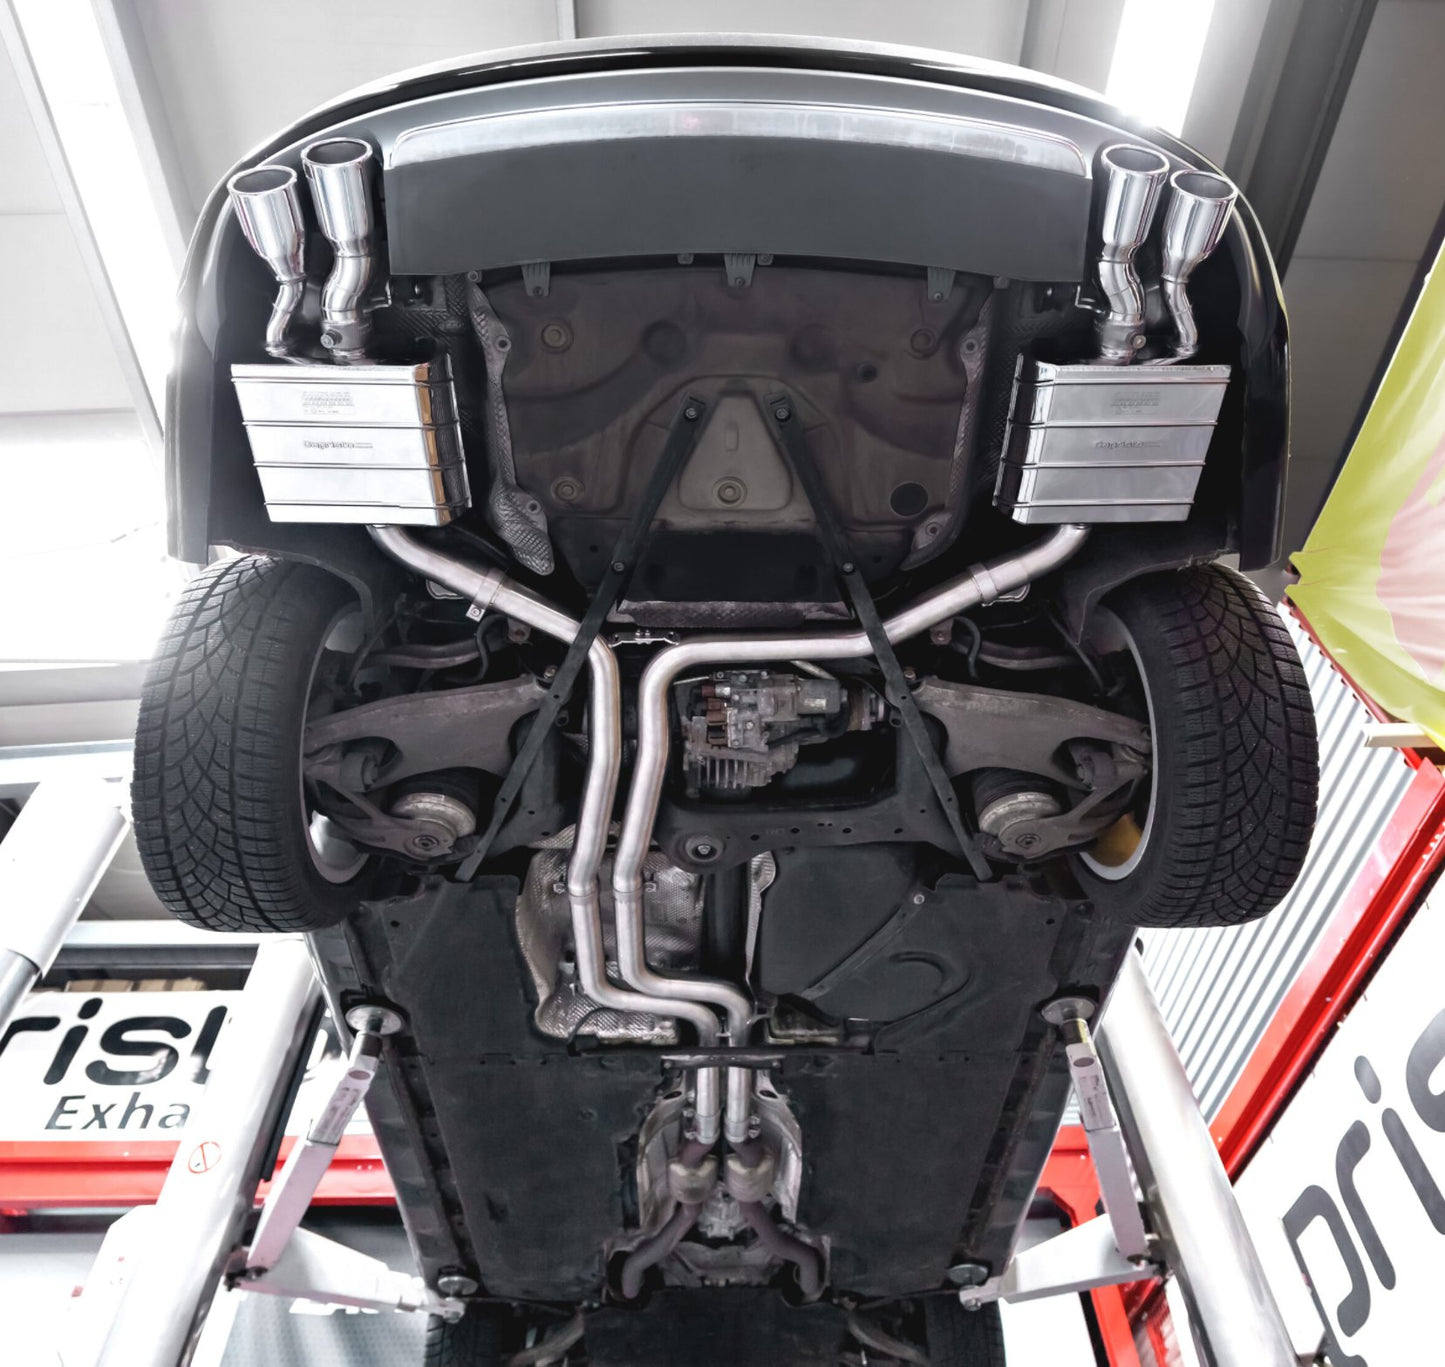 Capristo Sportauspuff Audi S6 4G mit CH Zulassung - TUNING SWITZERLANDAbgasanlagen / DownpipesTUNING SWITZERLAND02669Capristo Sportauspuff Audi S6 4G mit CH Zulassung